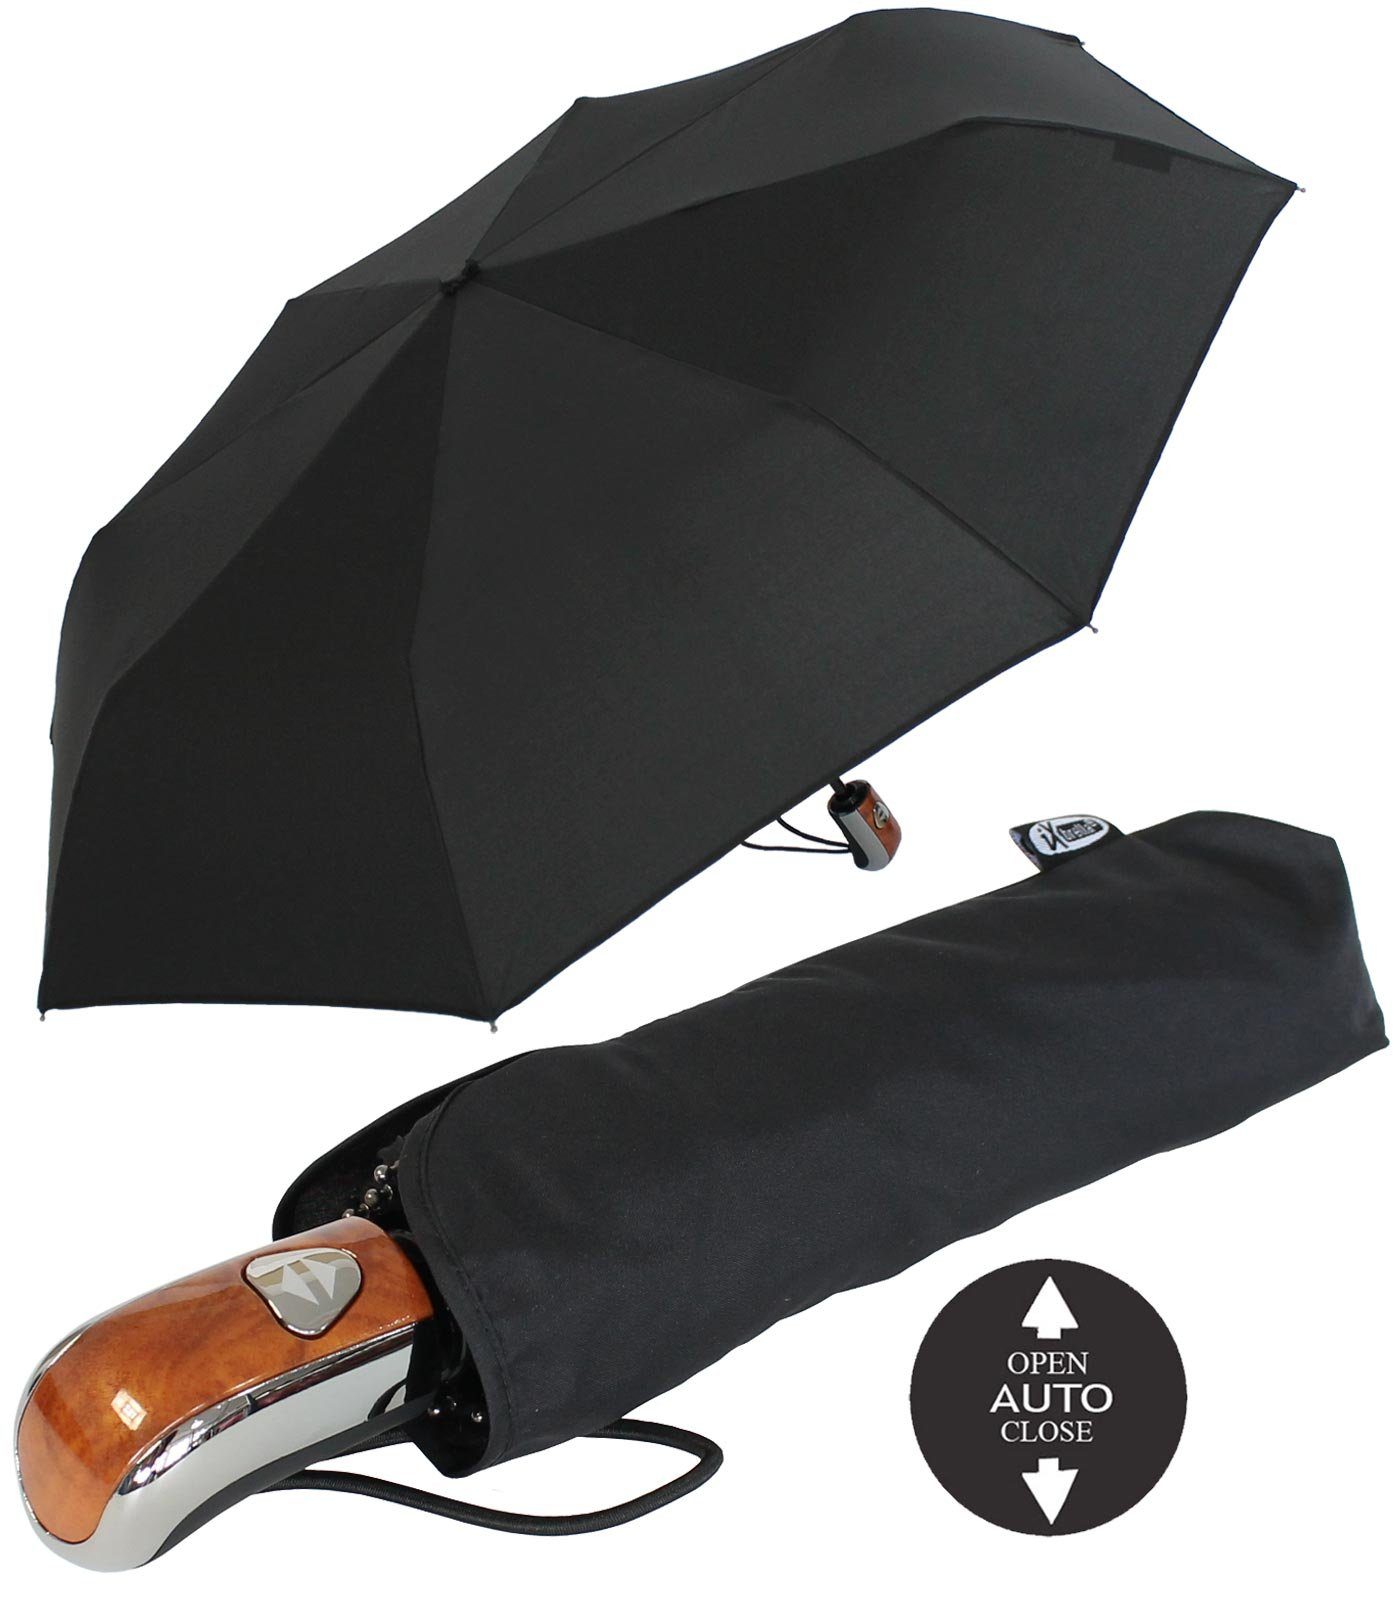 und Regenschirm iX-brella Griff Holz- mit Auf-Zu- Taschenregenschirm Karbonoptik Class First stabiler Automatik,